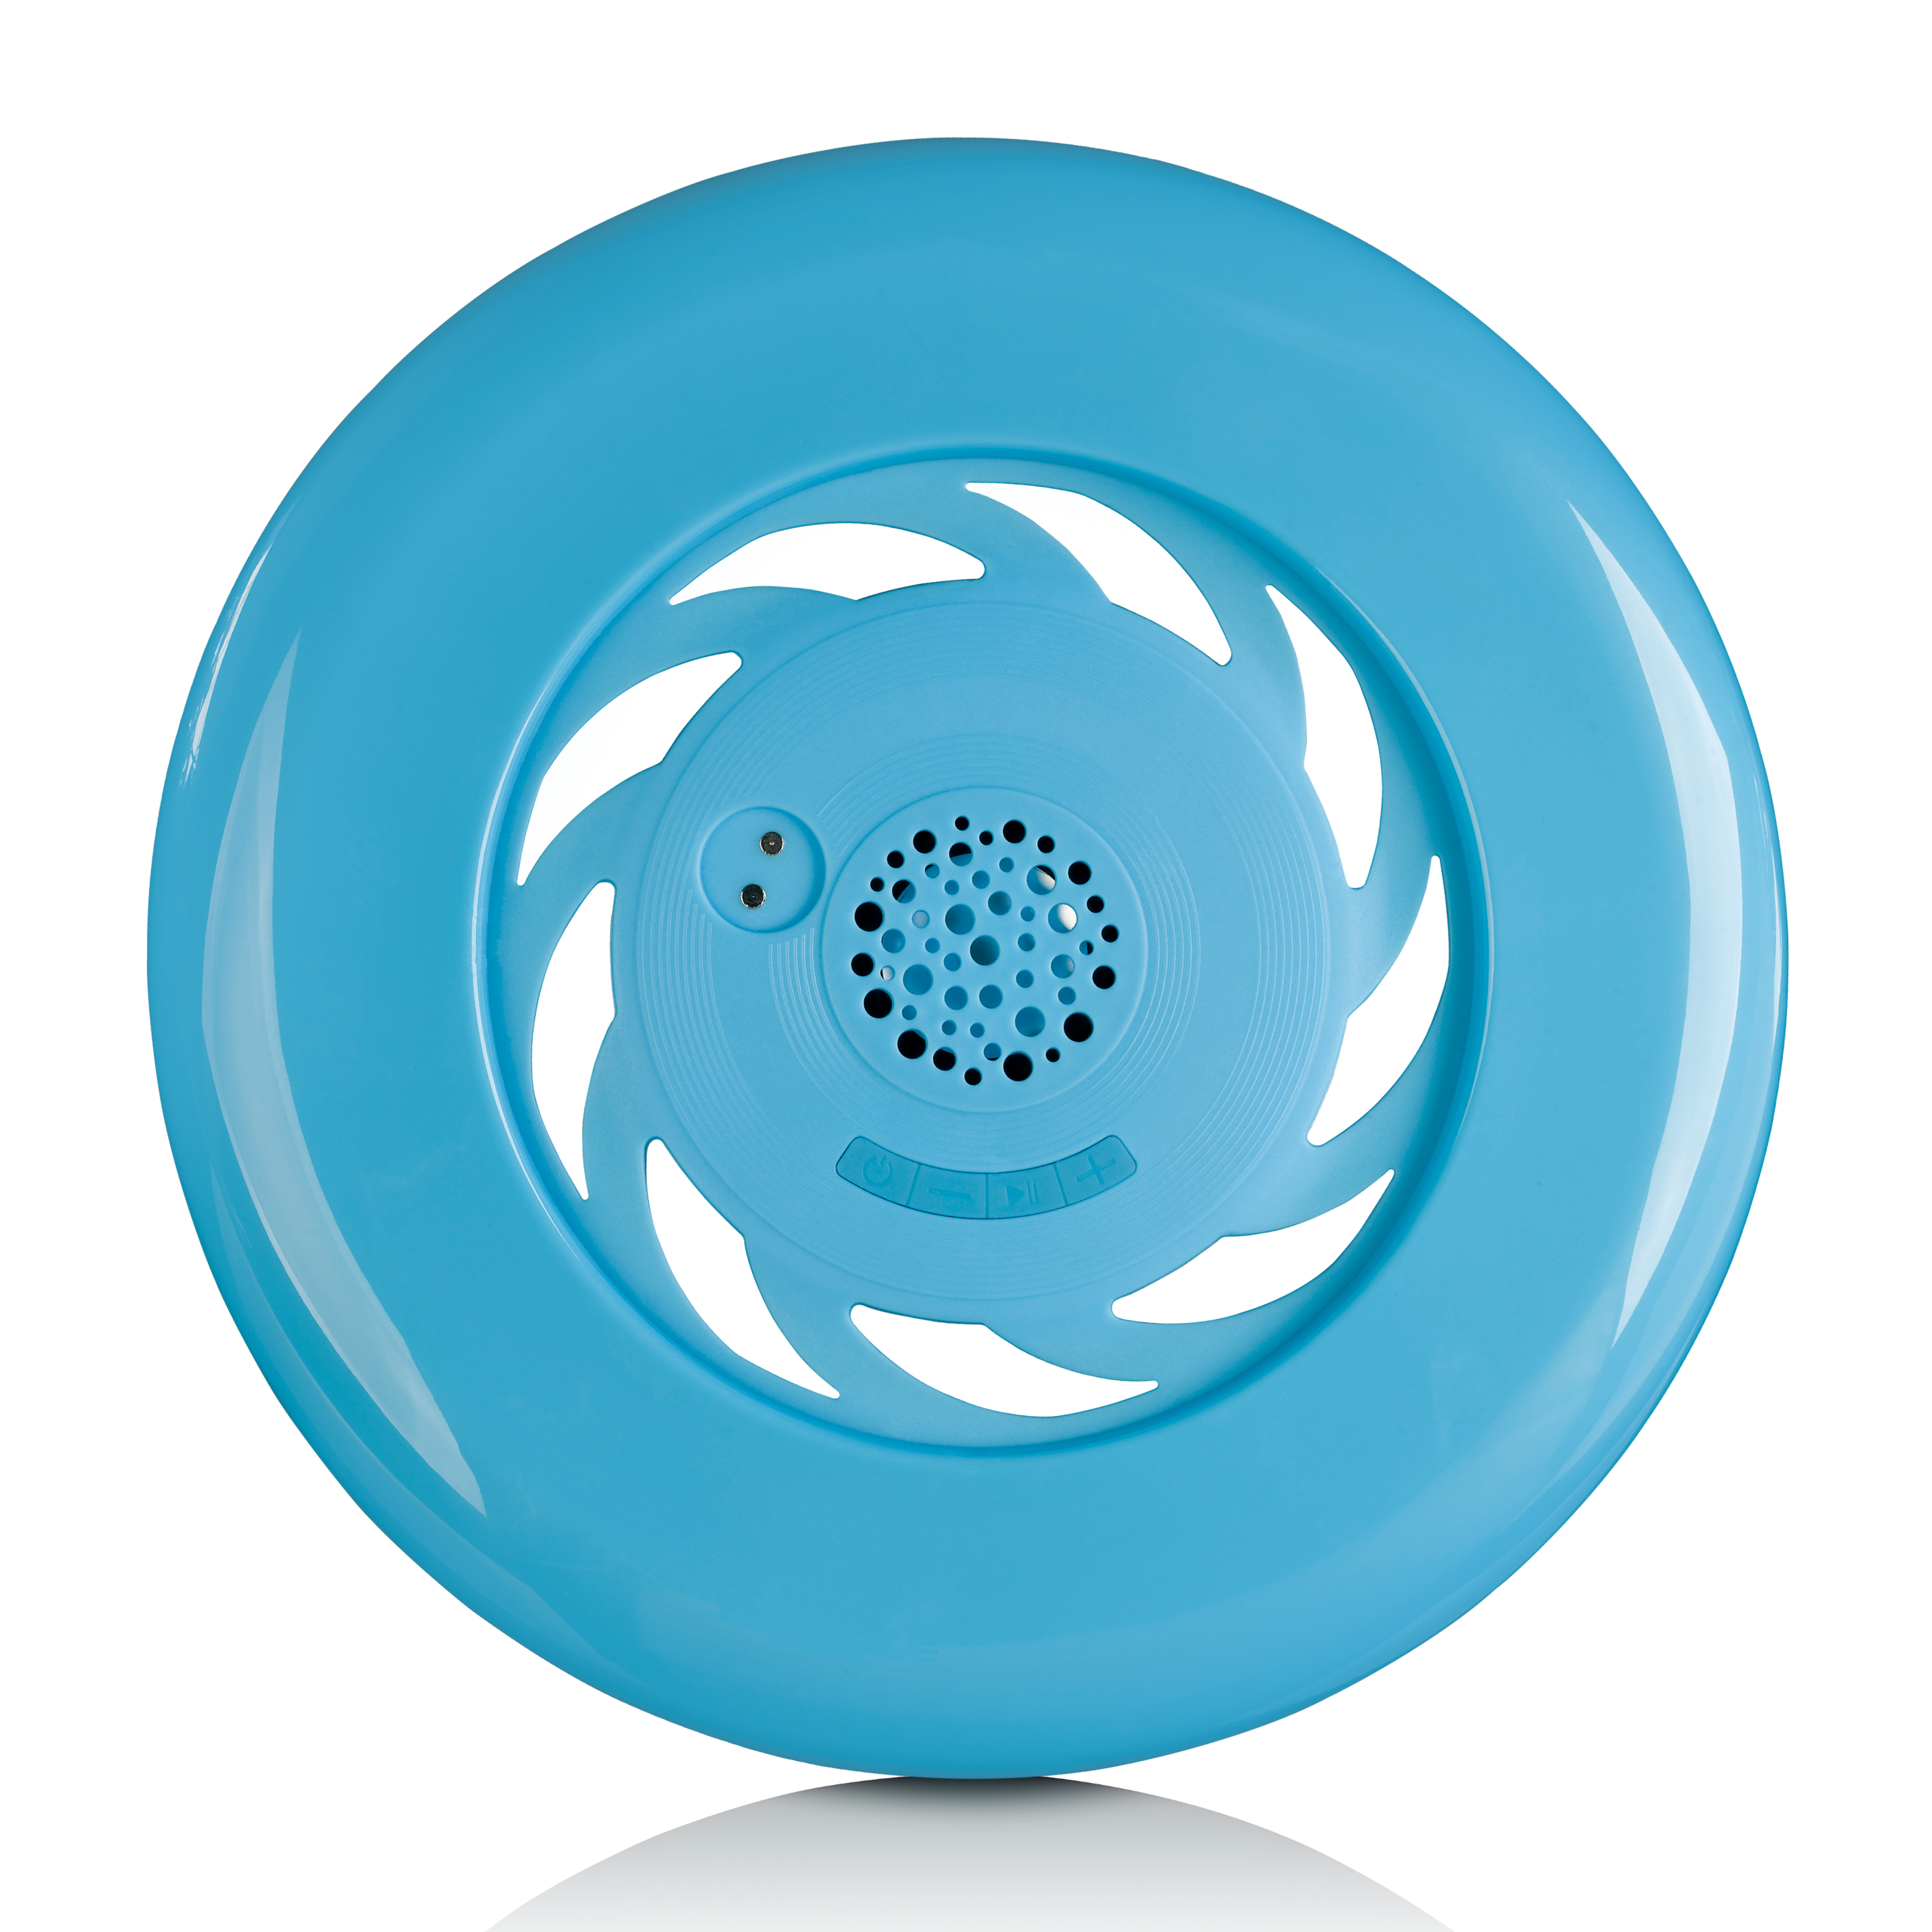 AFB-100BU Frisbee LENCO - Blau Bluetooth-Frisbee,